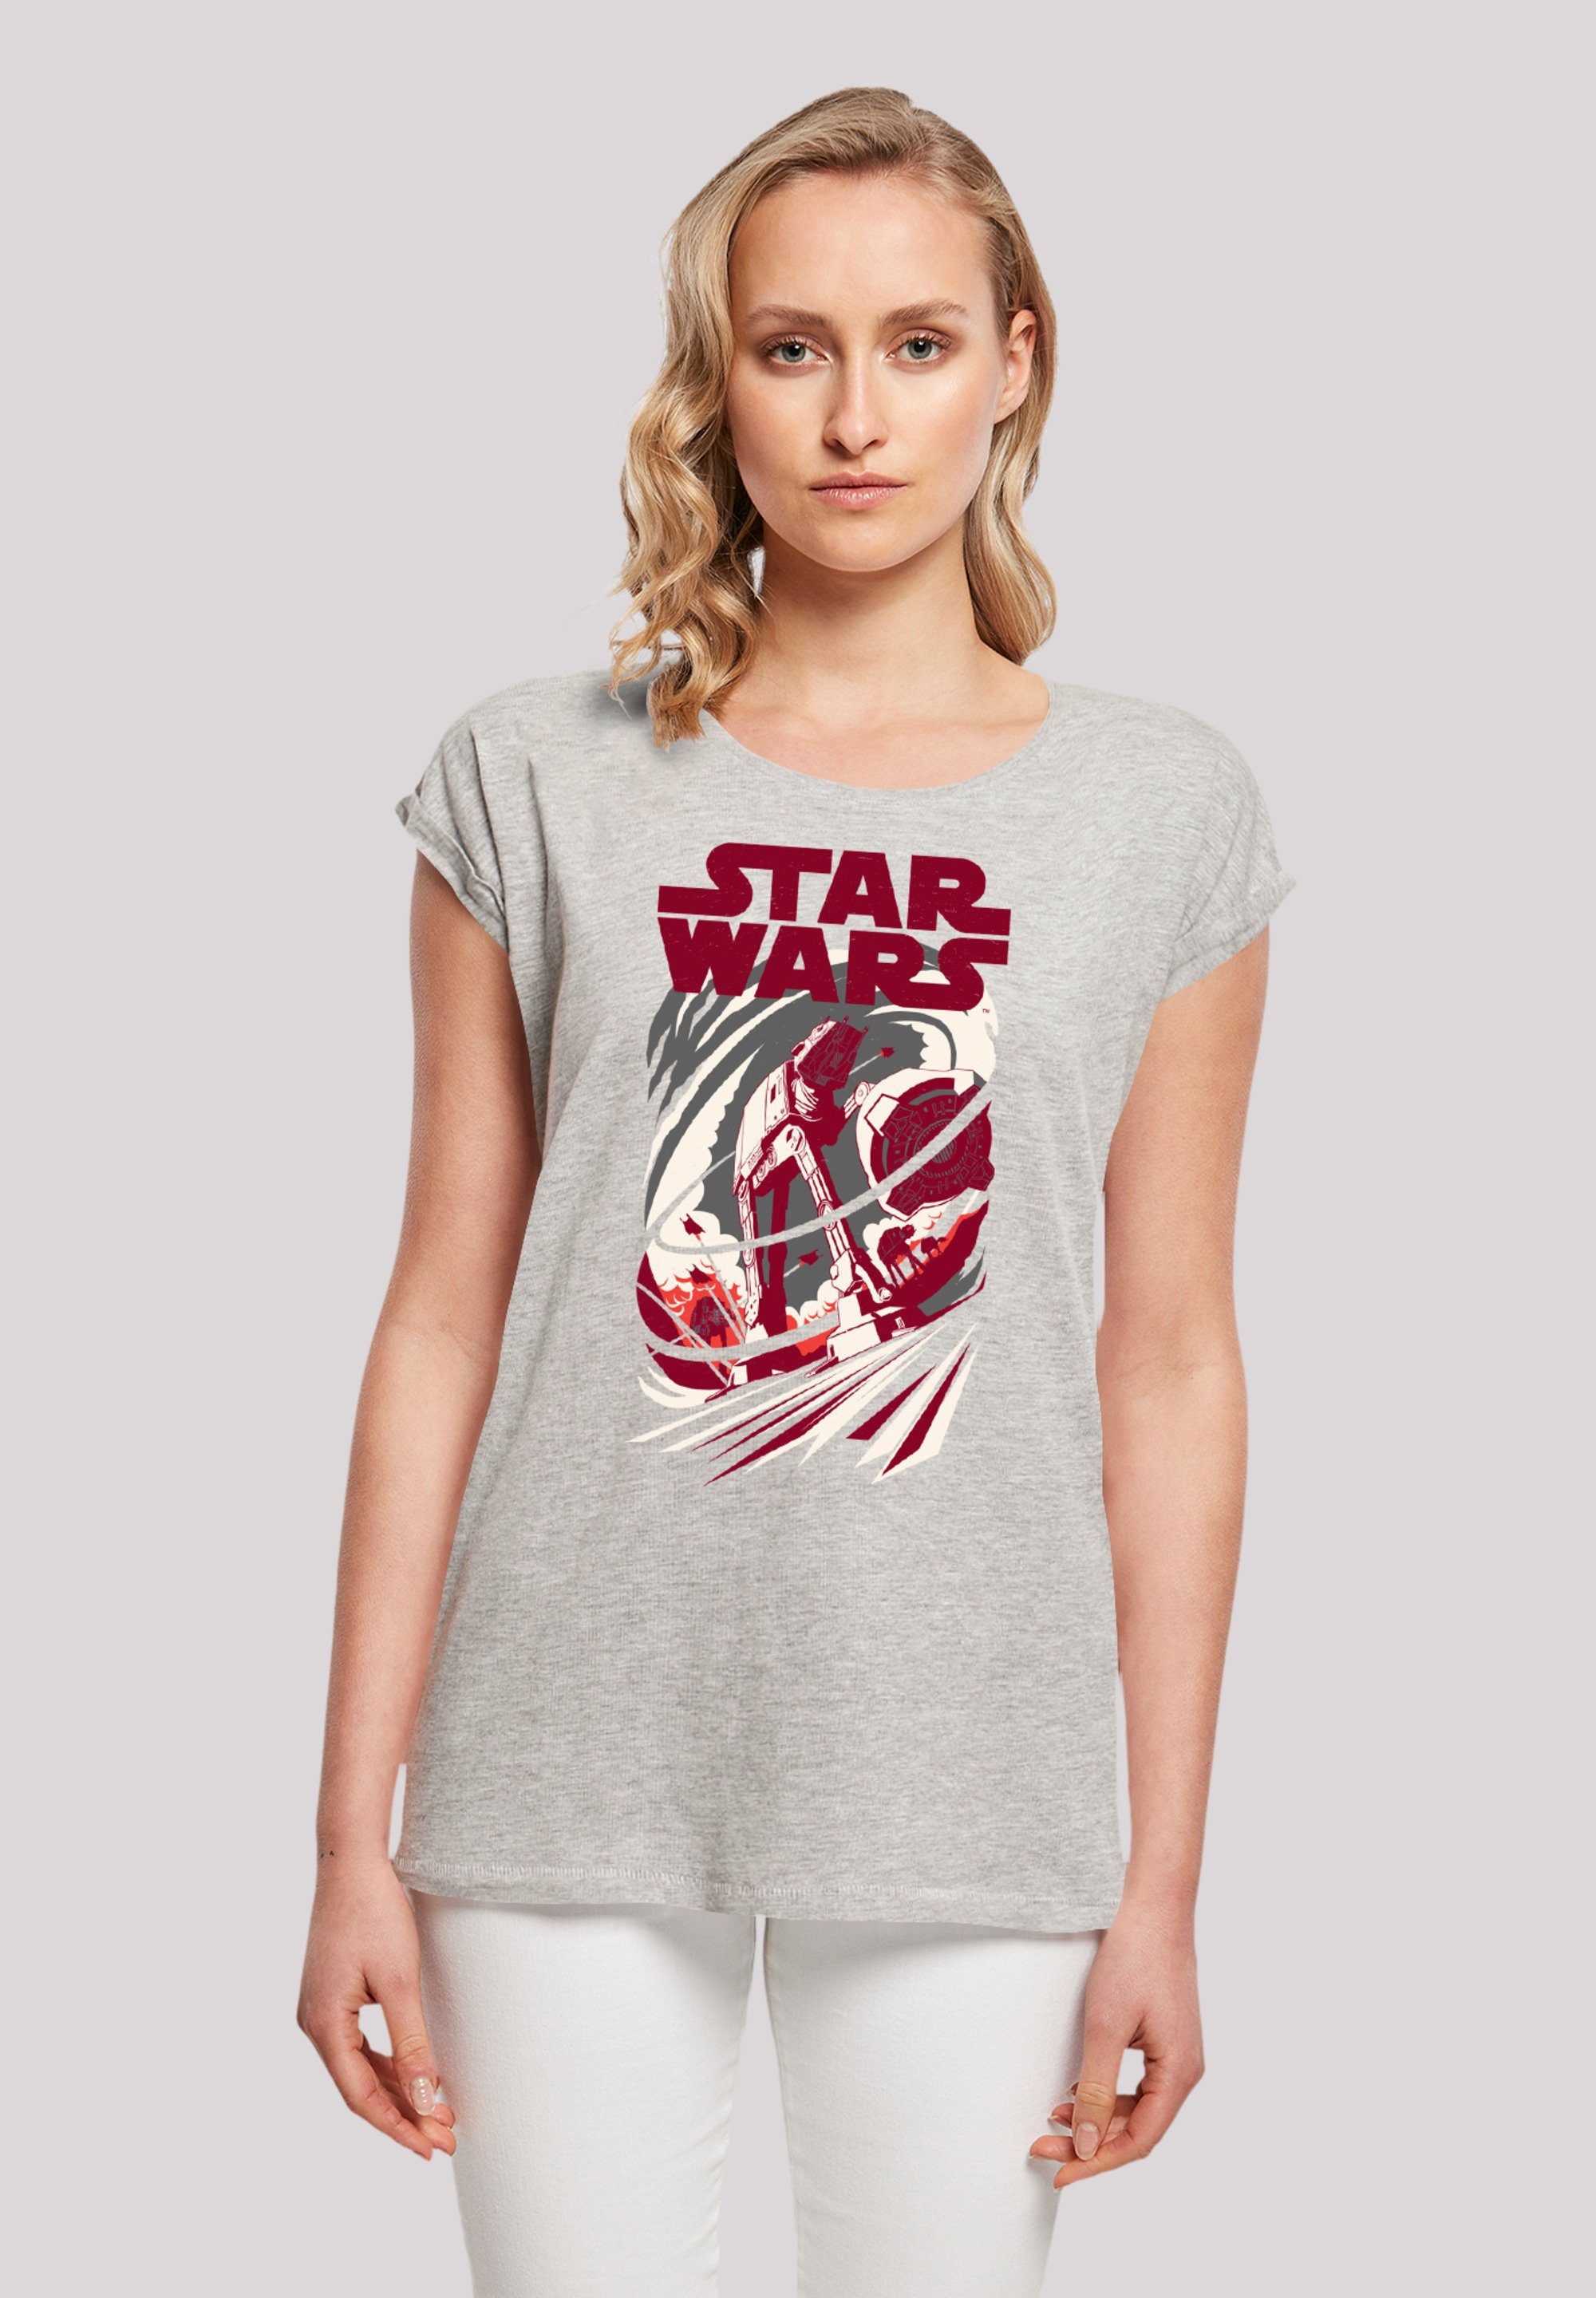 F4NT4STIC T-Shirt Star Wars Turmoil grey Premium heather Qualität